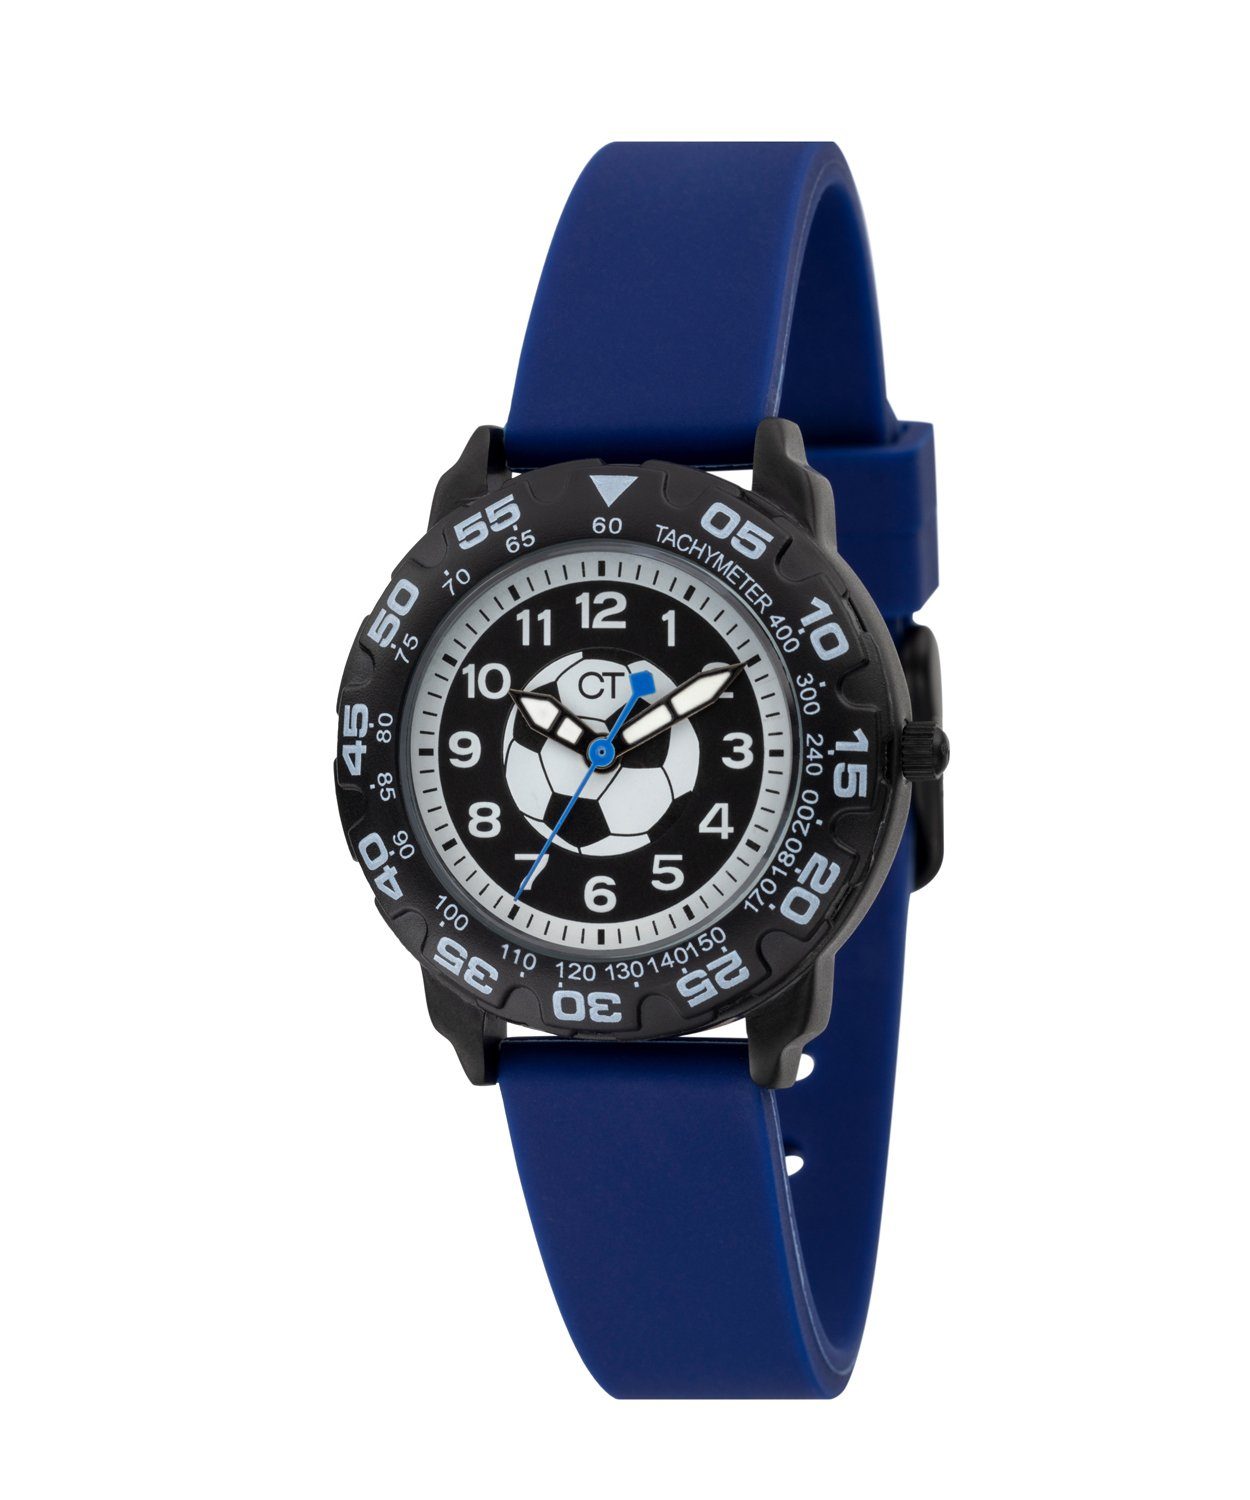 Quarzuhr TIME Armbanduhr blau COOL